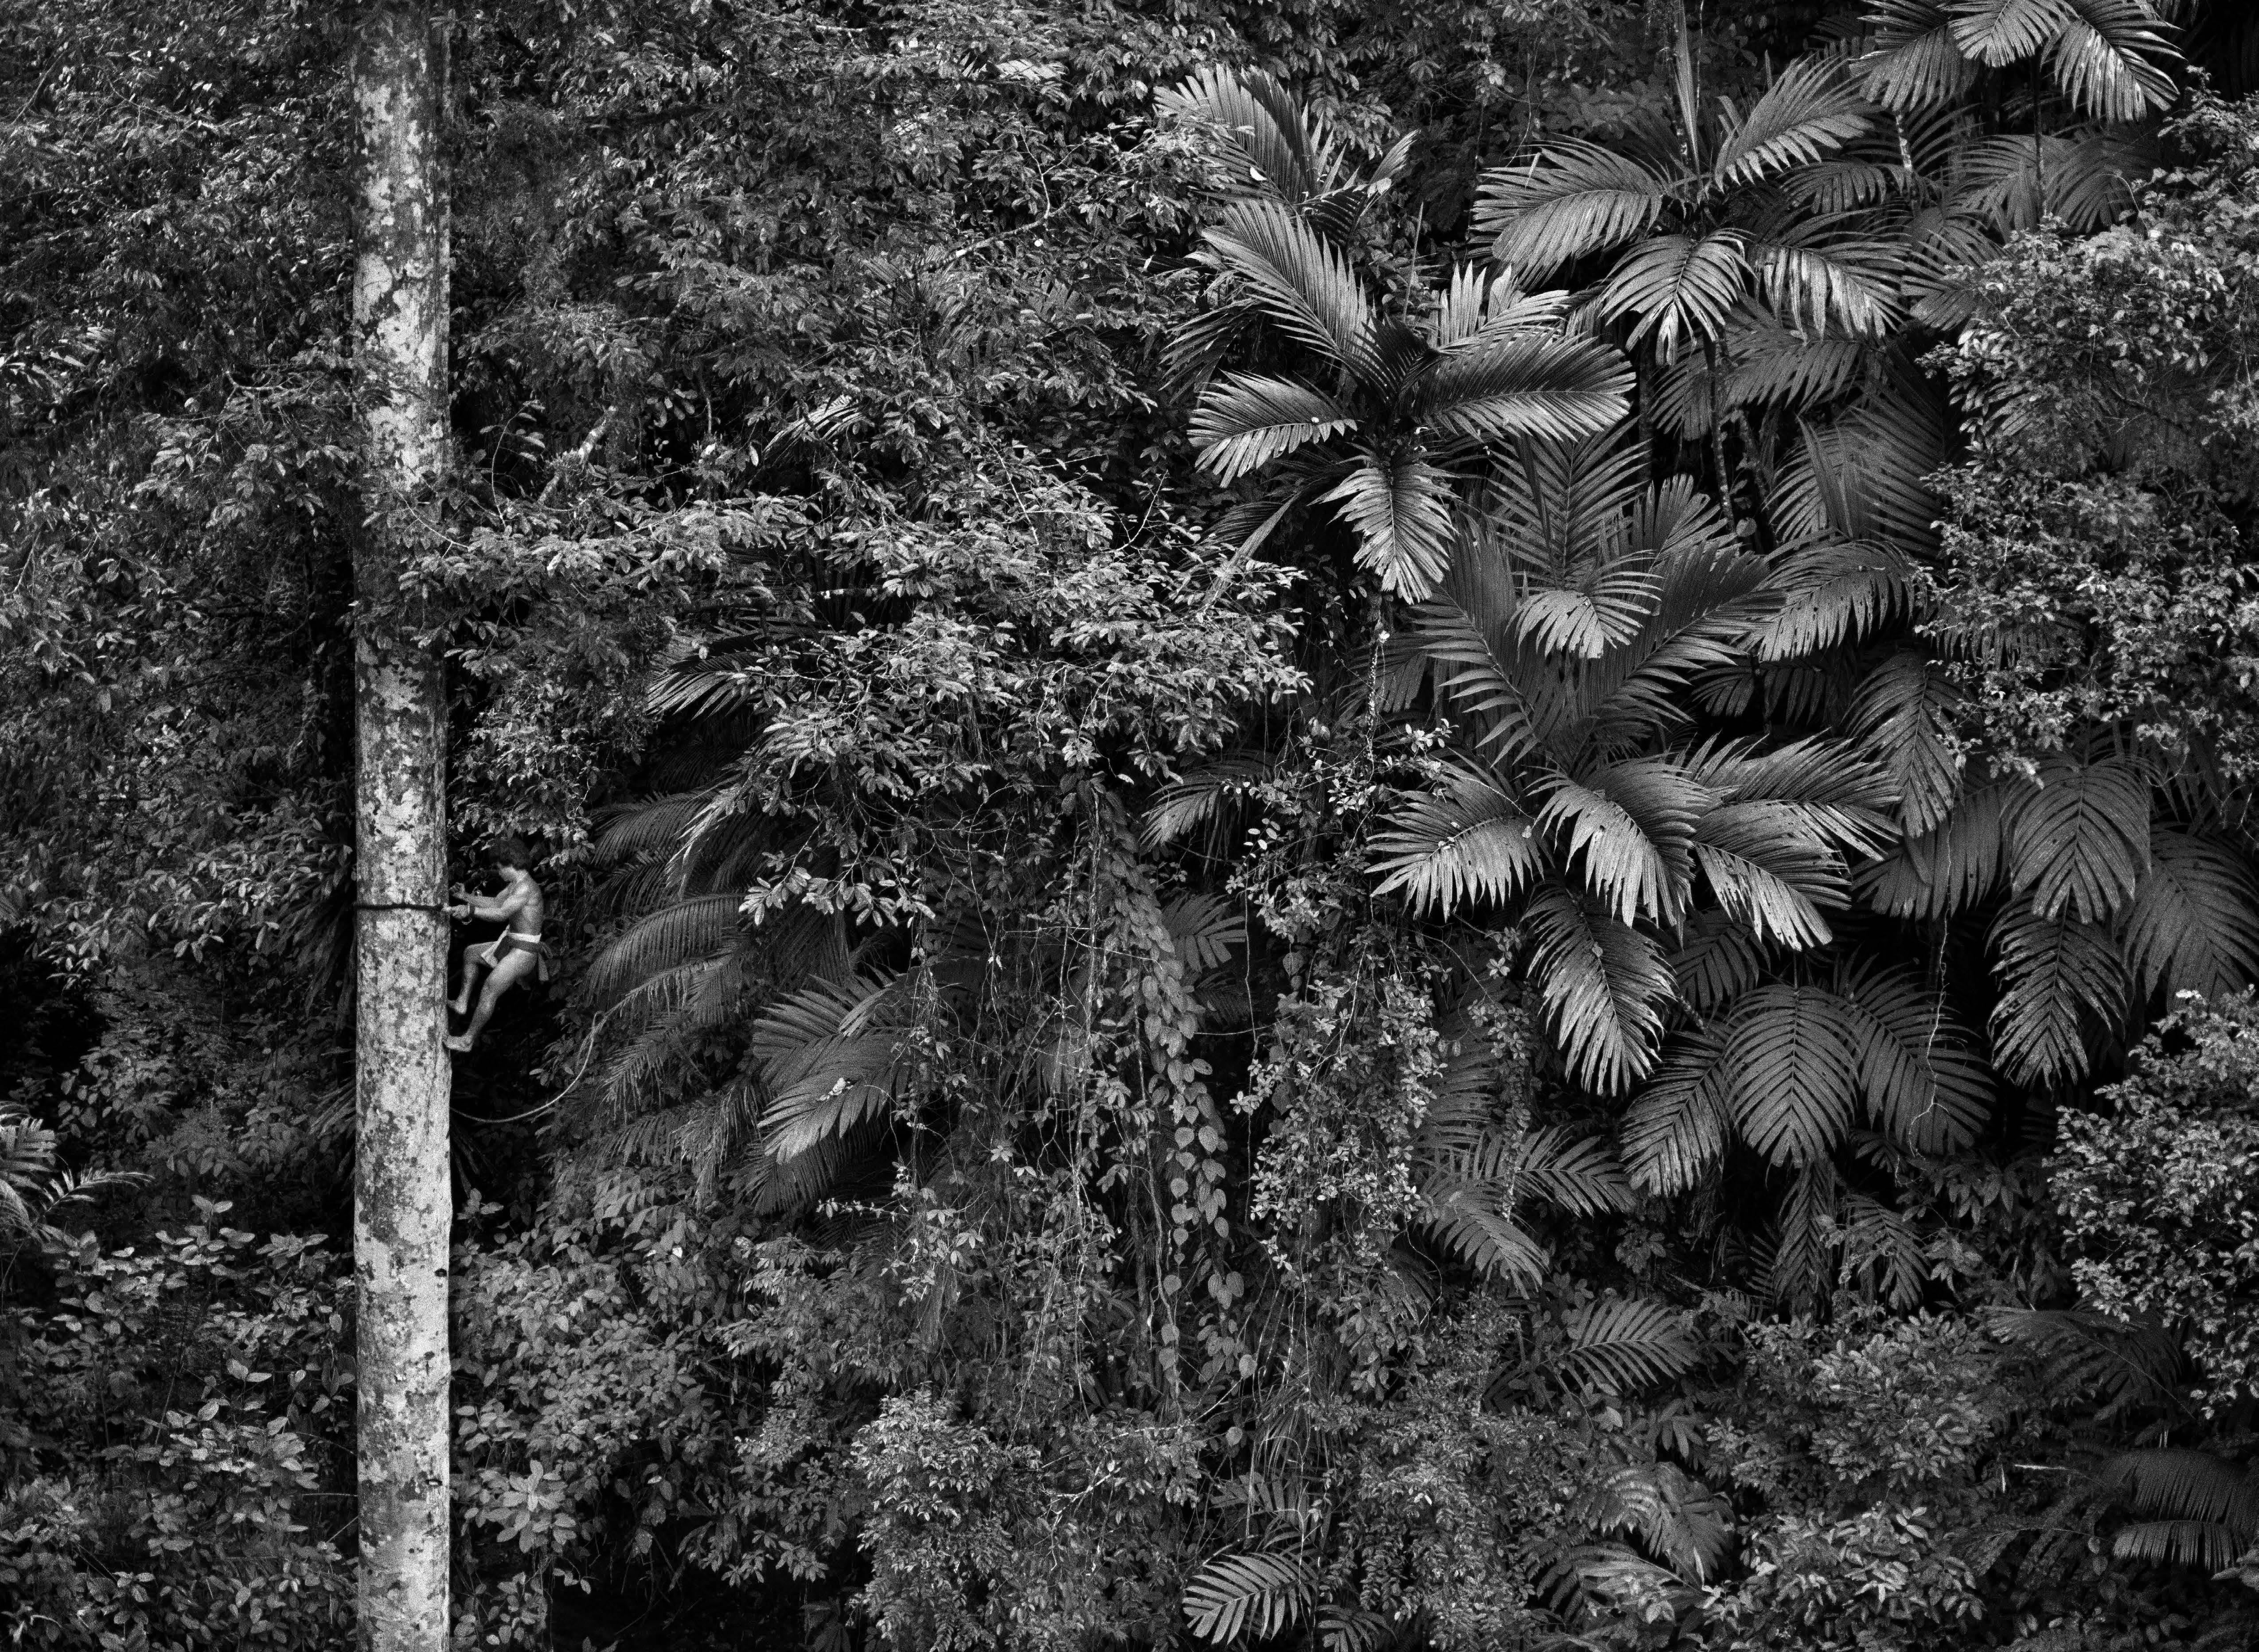 Mentawai-Klettern in einem rätselhaften Baum, Siberut-Insel, West Sumatra, Indonesien, 2008